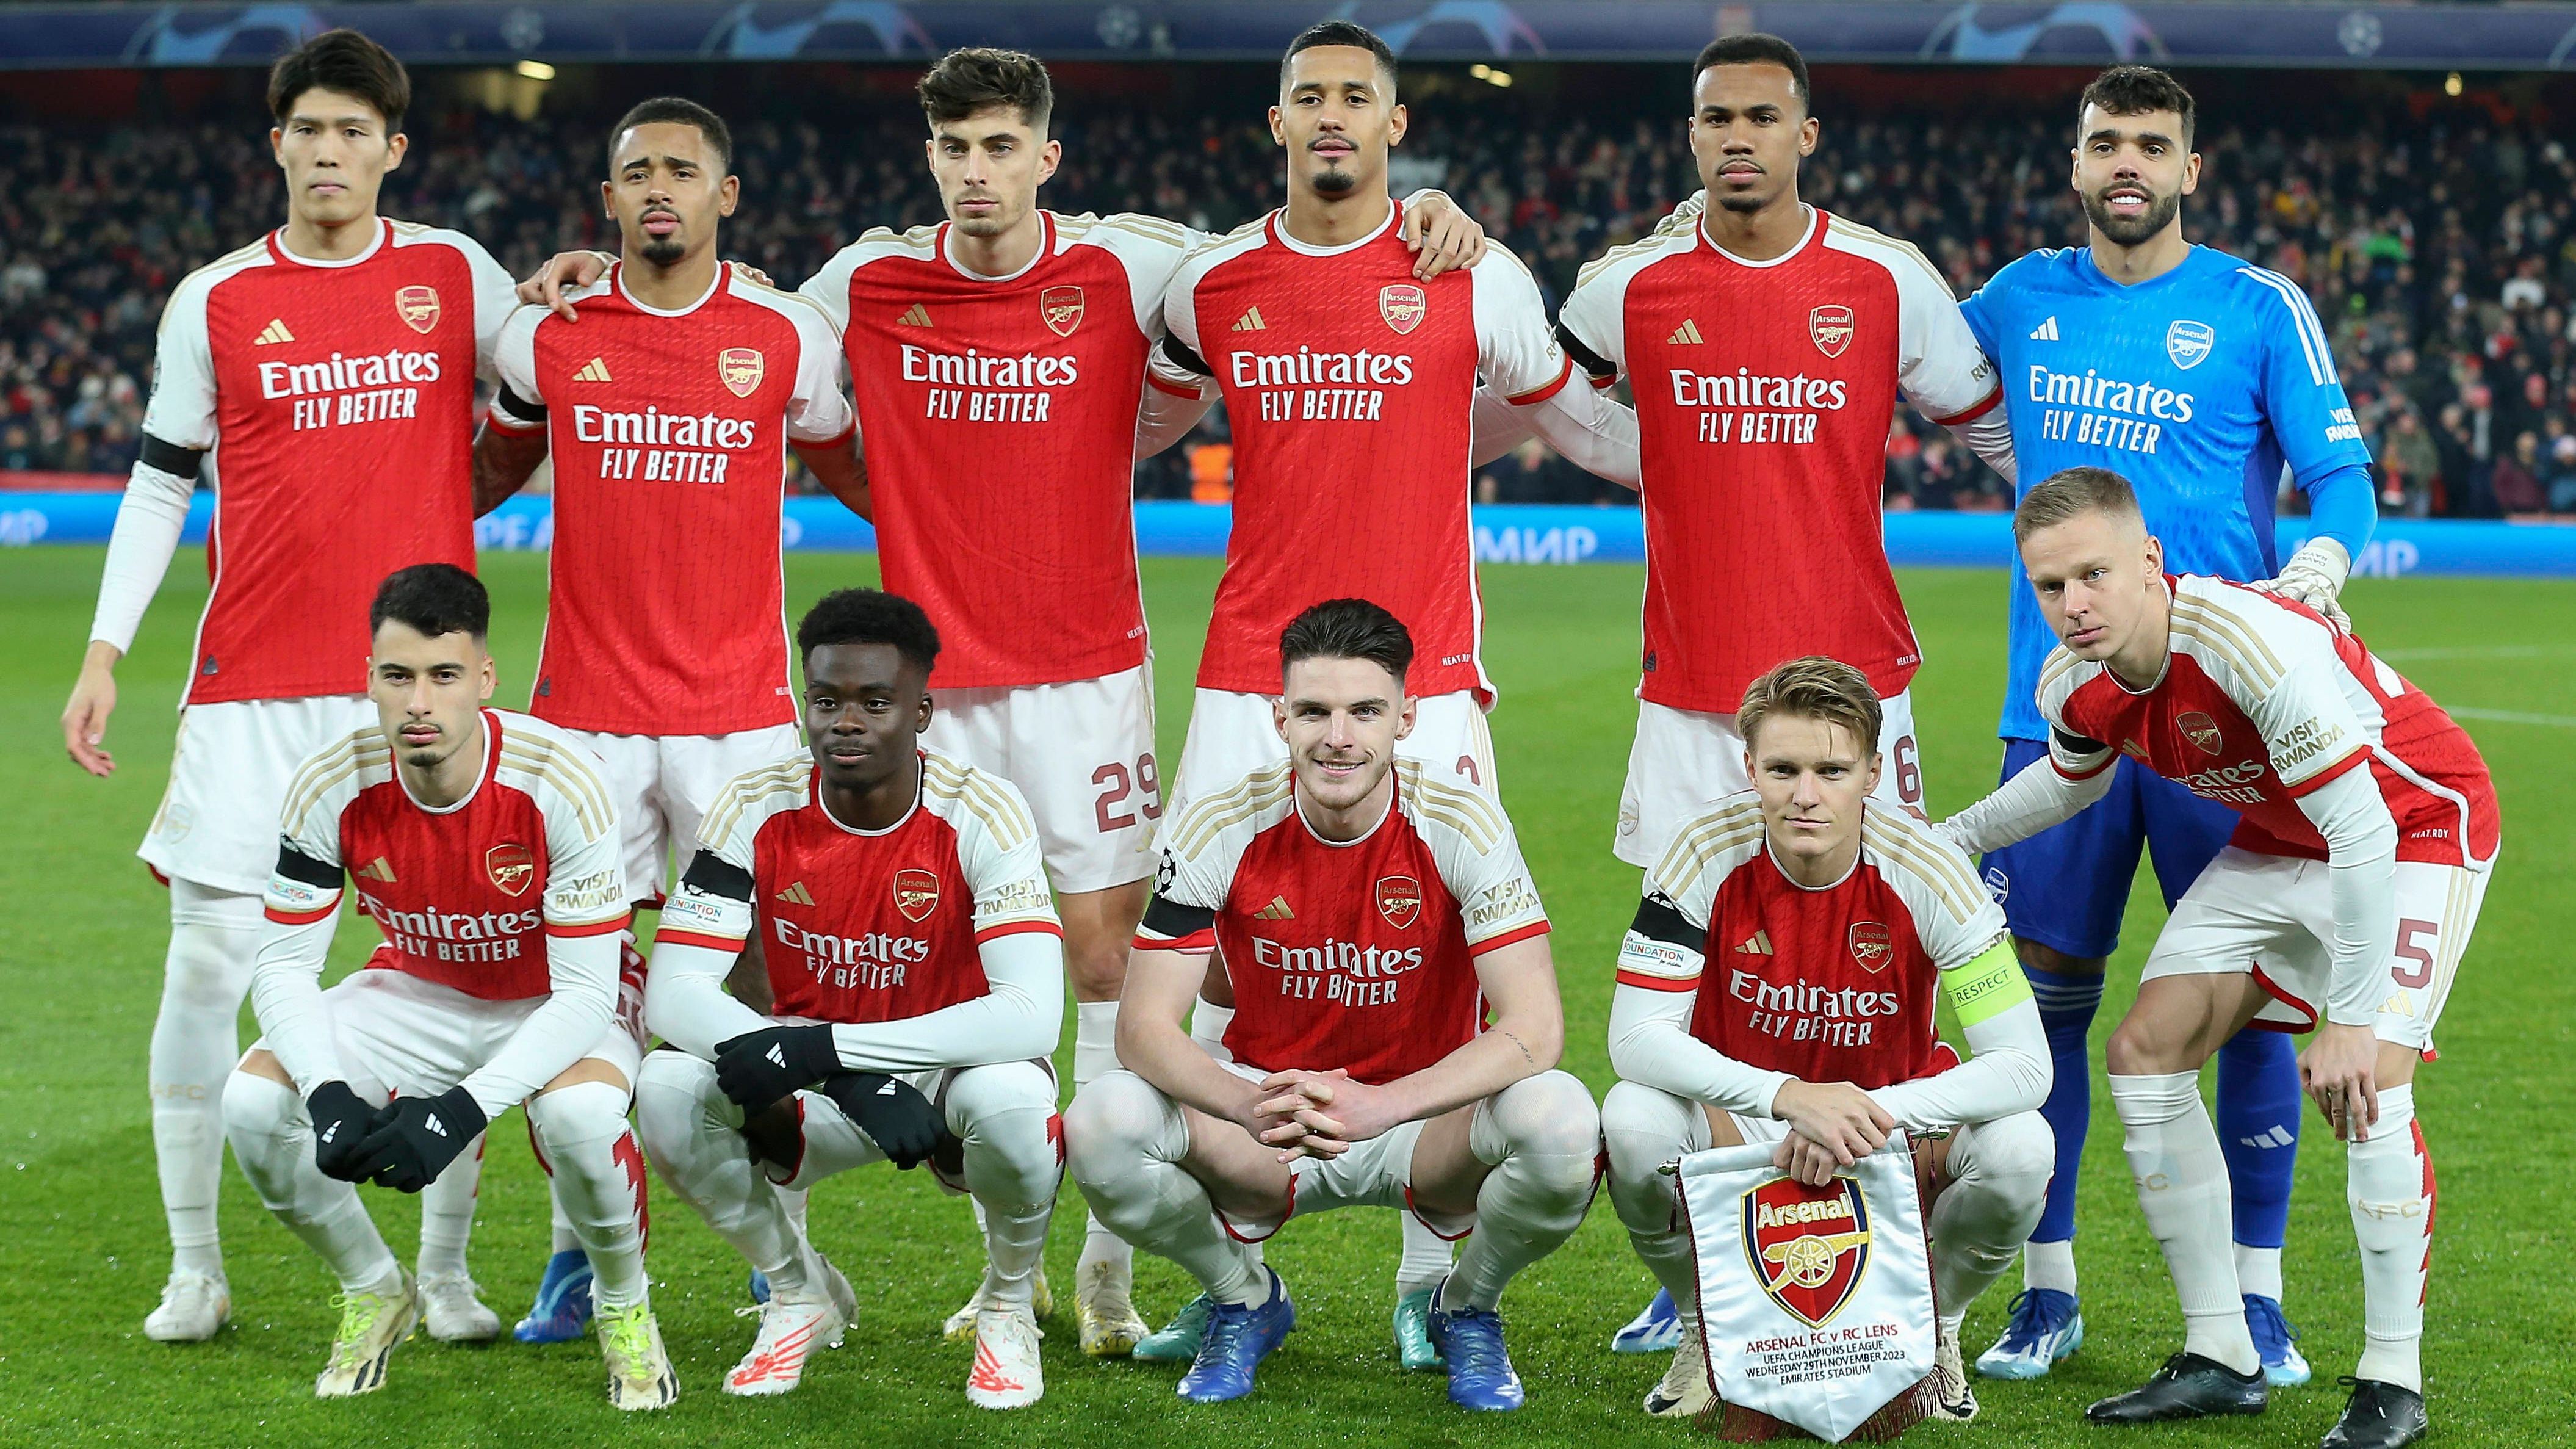 <strong>Gruppe B: FC Arsenal</strong><br>Die "Gunners" haben am fünften Spieltag den Deckel draufgemacht, und das sehr eindrucksvoll. Nach einem 6:0 gegen Lens ist auch der Gruppensieg sicher.